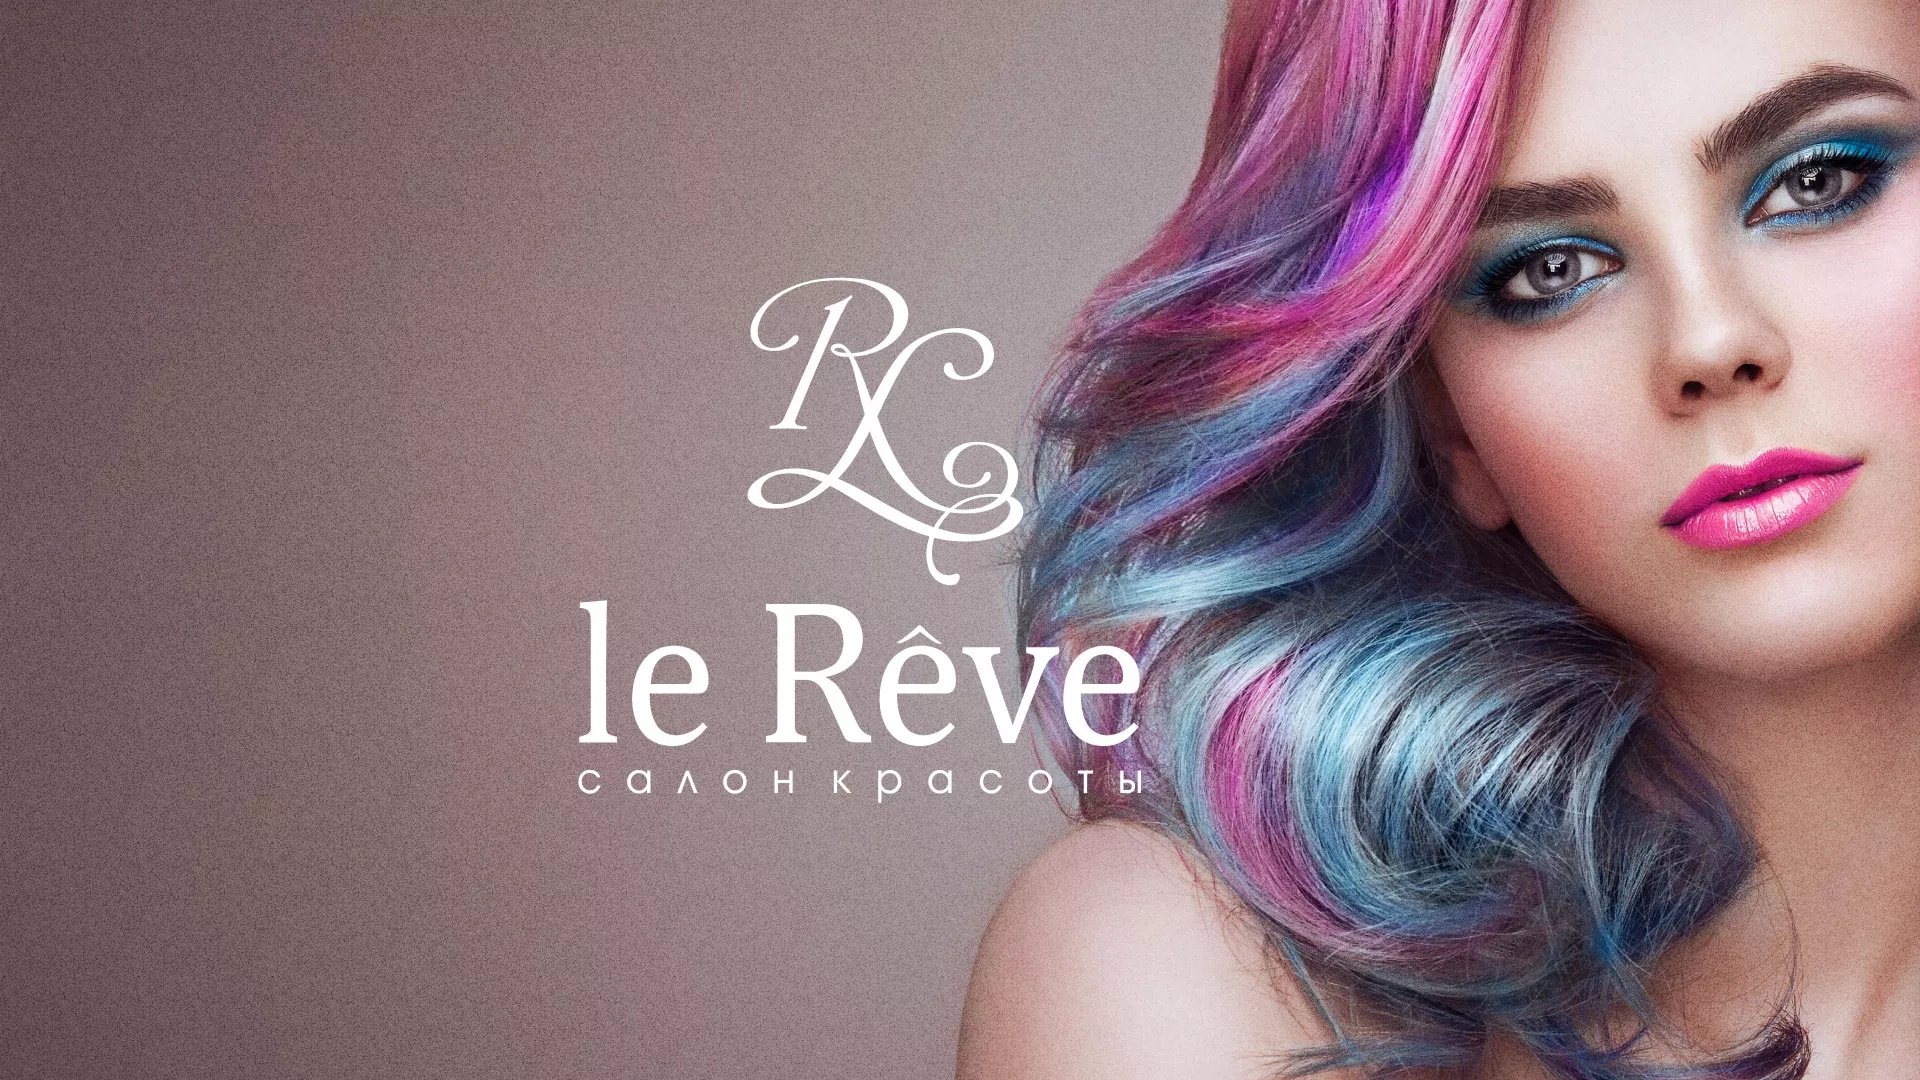 Создание сайта для салона красоты «Le Reve» в Судже